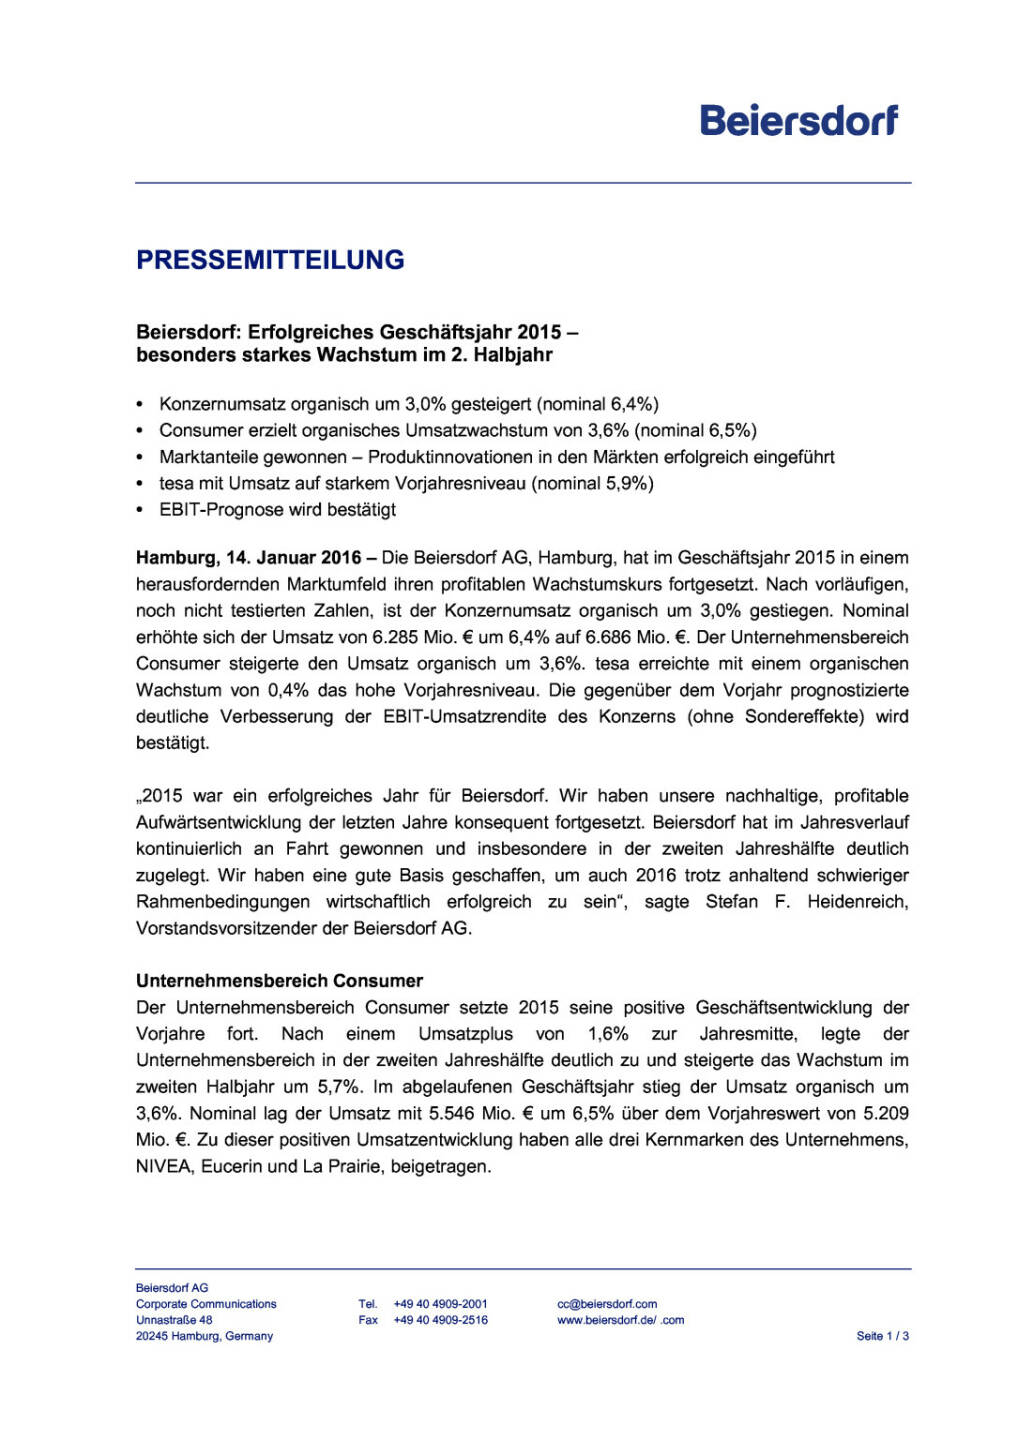 Beiersdorf: vorläufige Umsatzzahlen 2015, Seite 1/3, komplettes Dokument unter http://boerse-social.com/static/uploads/file_550_beiersdorf_vorlaufige_umsatzzahlen_2015.pdf